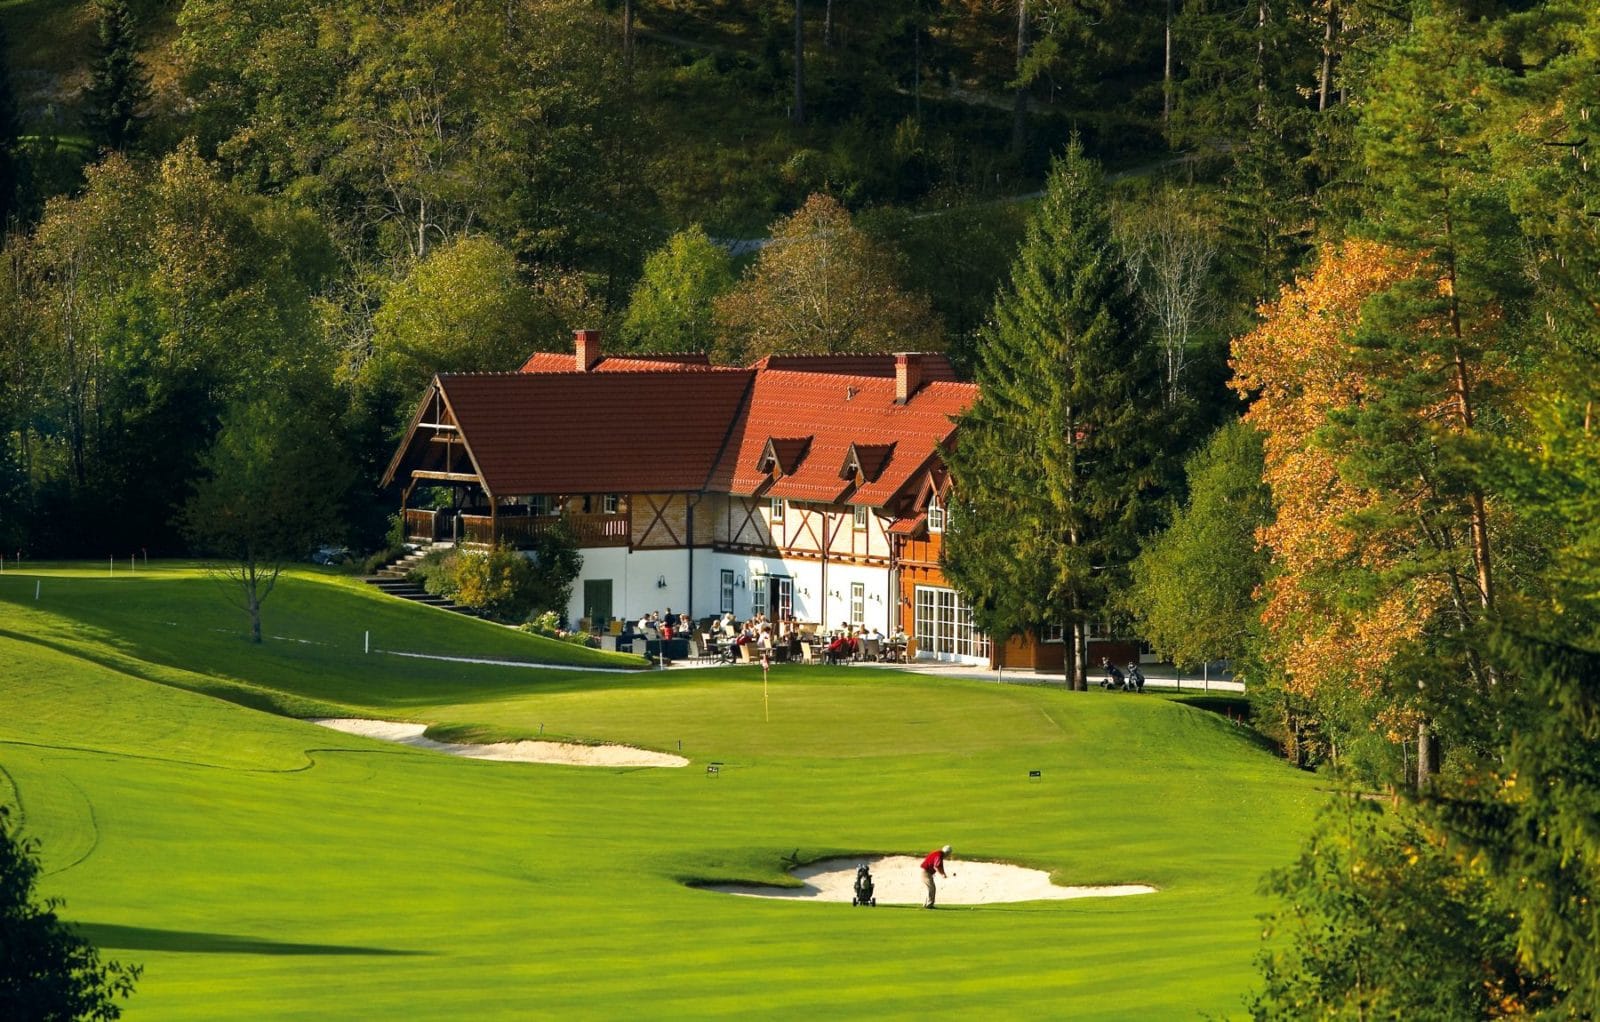 Golf Club Adamstal Franz Wittmann, golf in austria